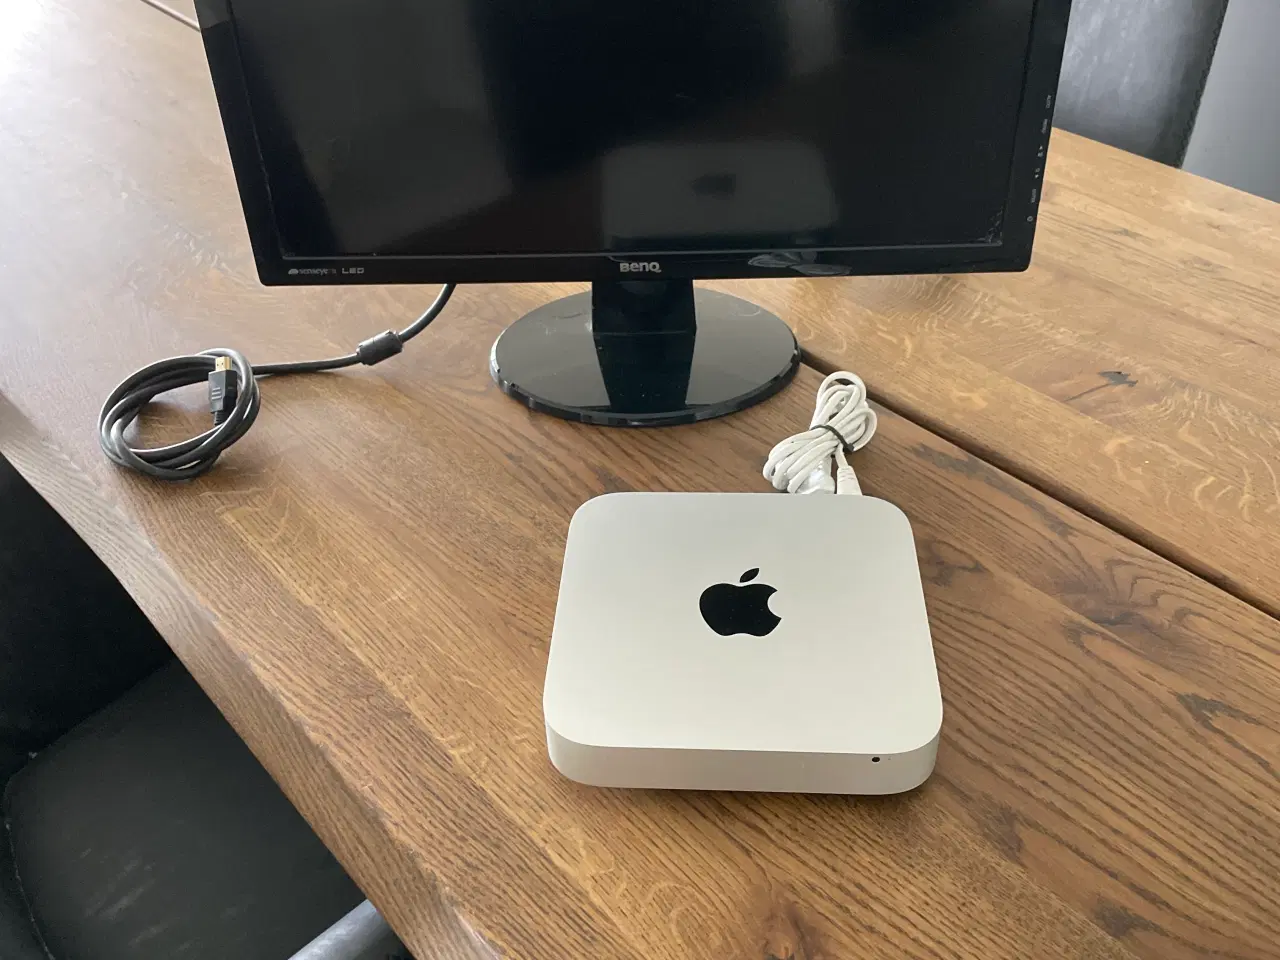 Billede 1 - Mac mini med tastatur og benq skærm. 